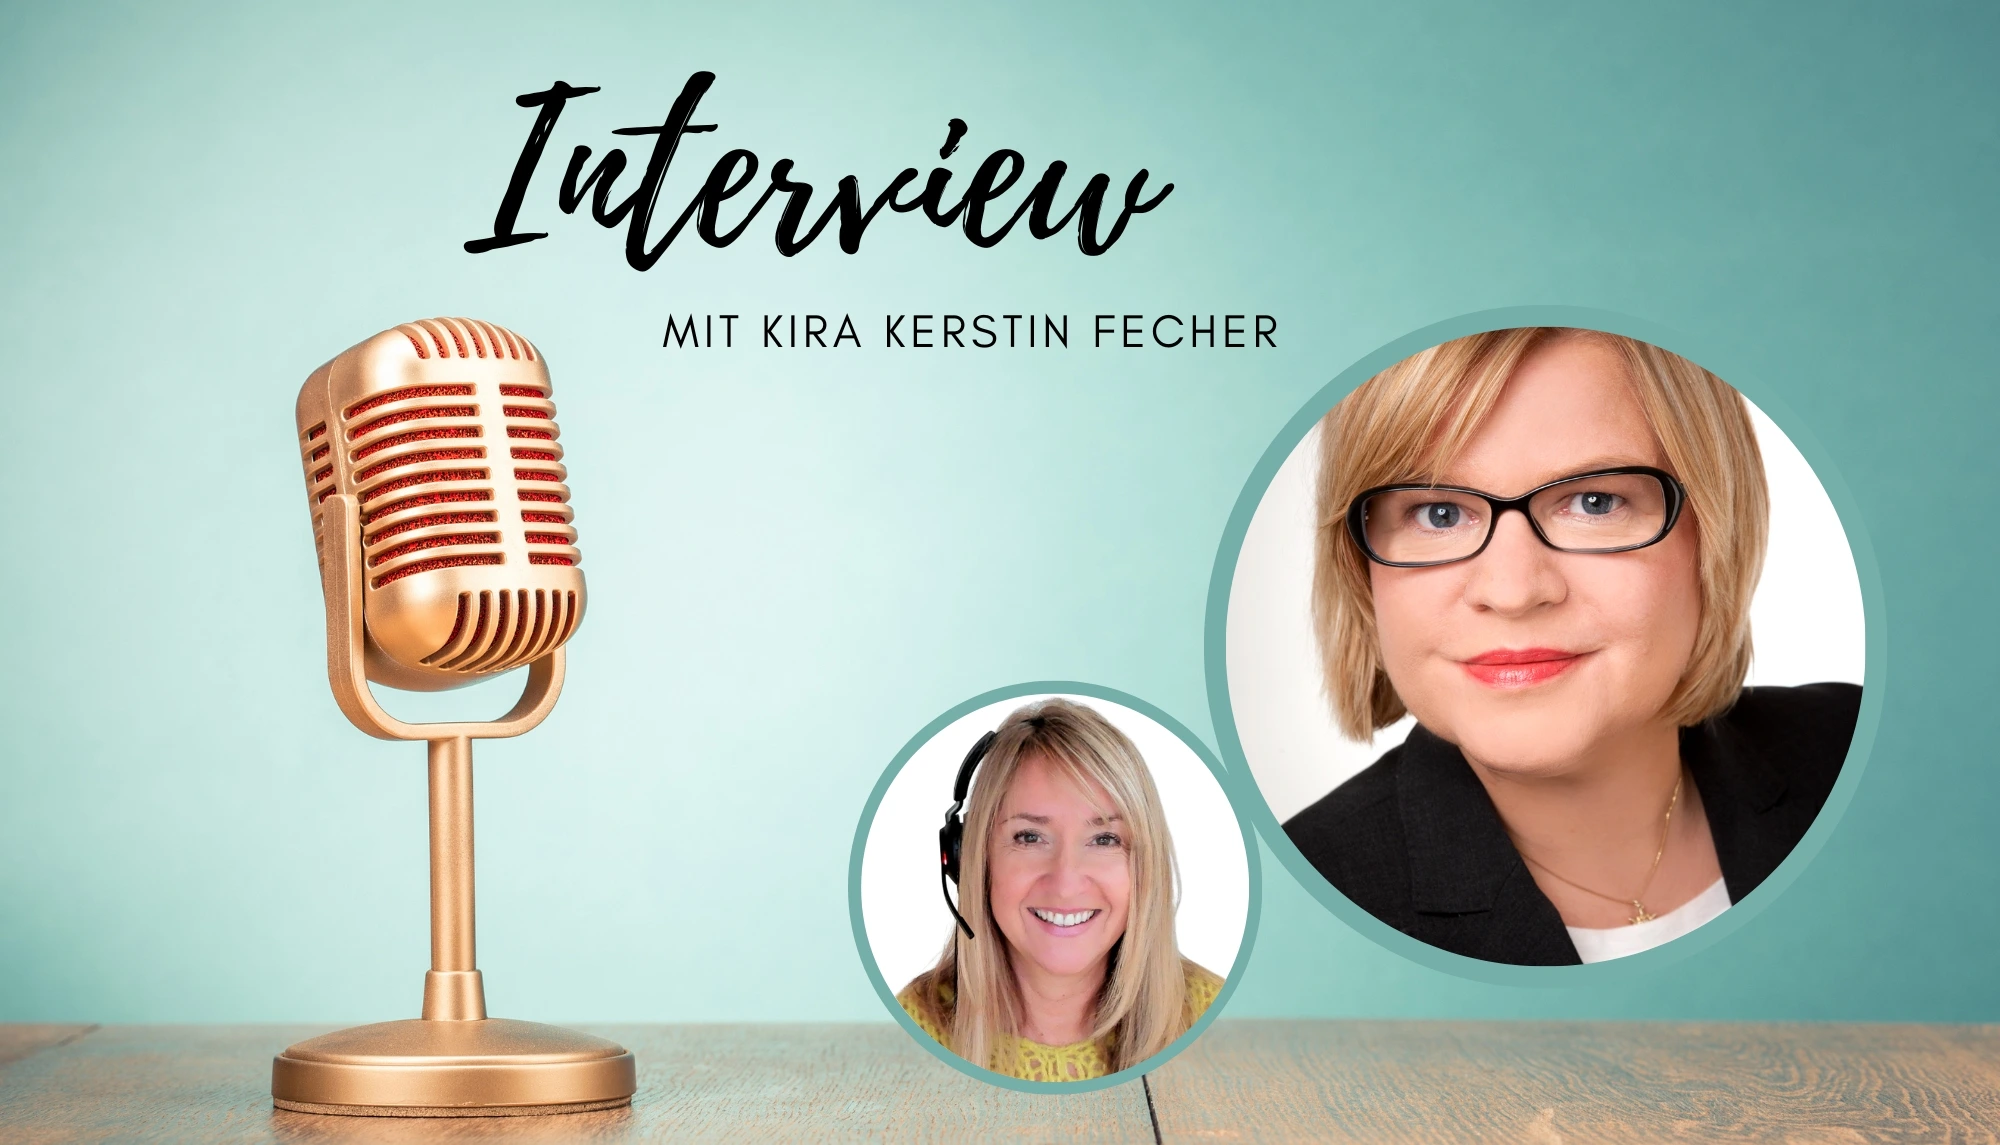 Interview mit Kira Kerstin Fecher